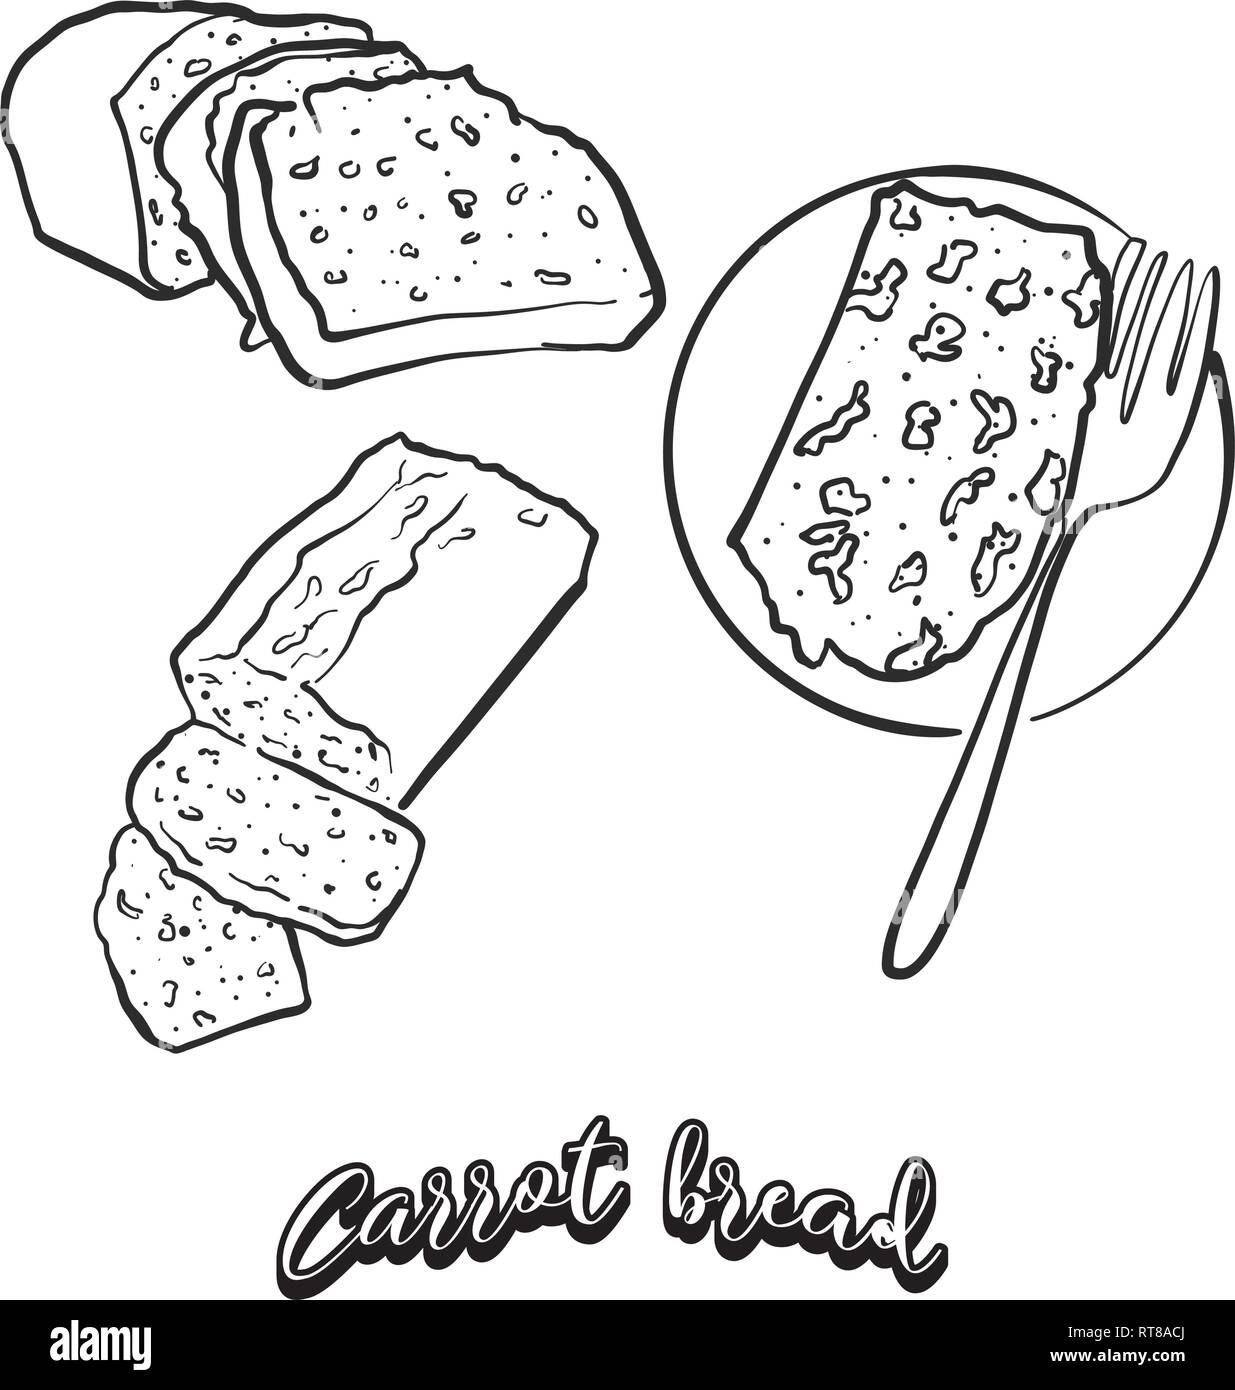 Mano bozzetto di carota pane pane. Vettore di disegno di cibo lievitato, usualmente noto in Irlanda. Illustrazione di pane serie. Illustrazione Vettoriale